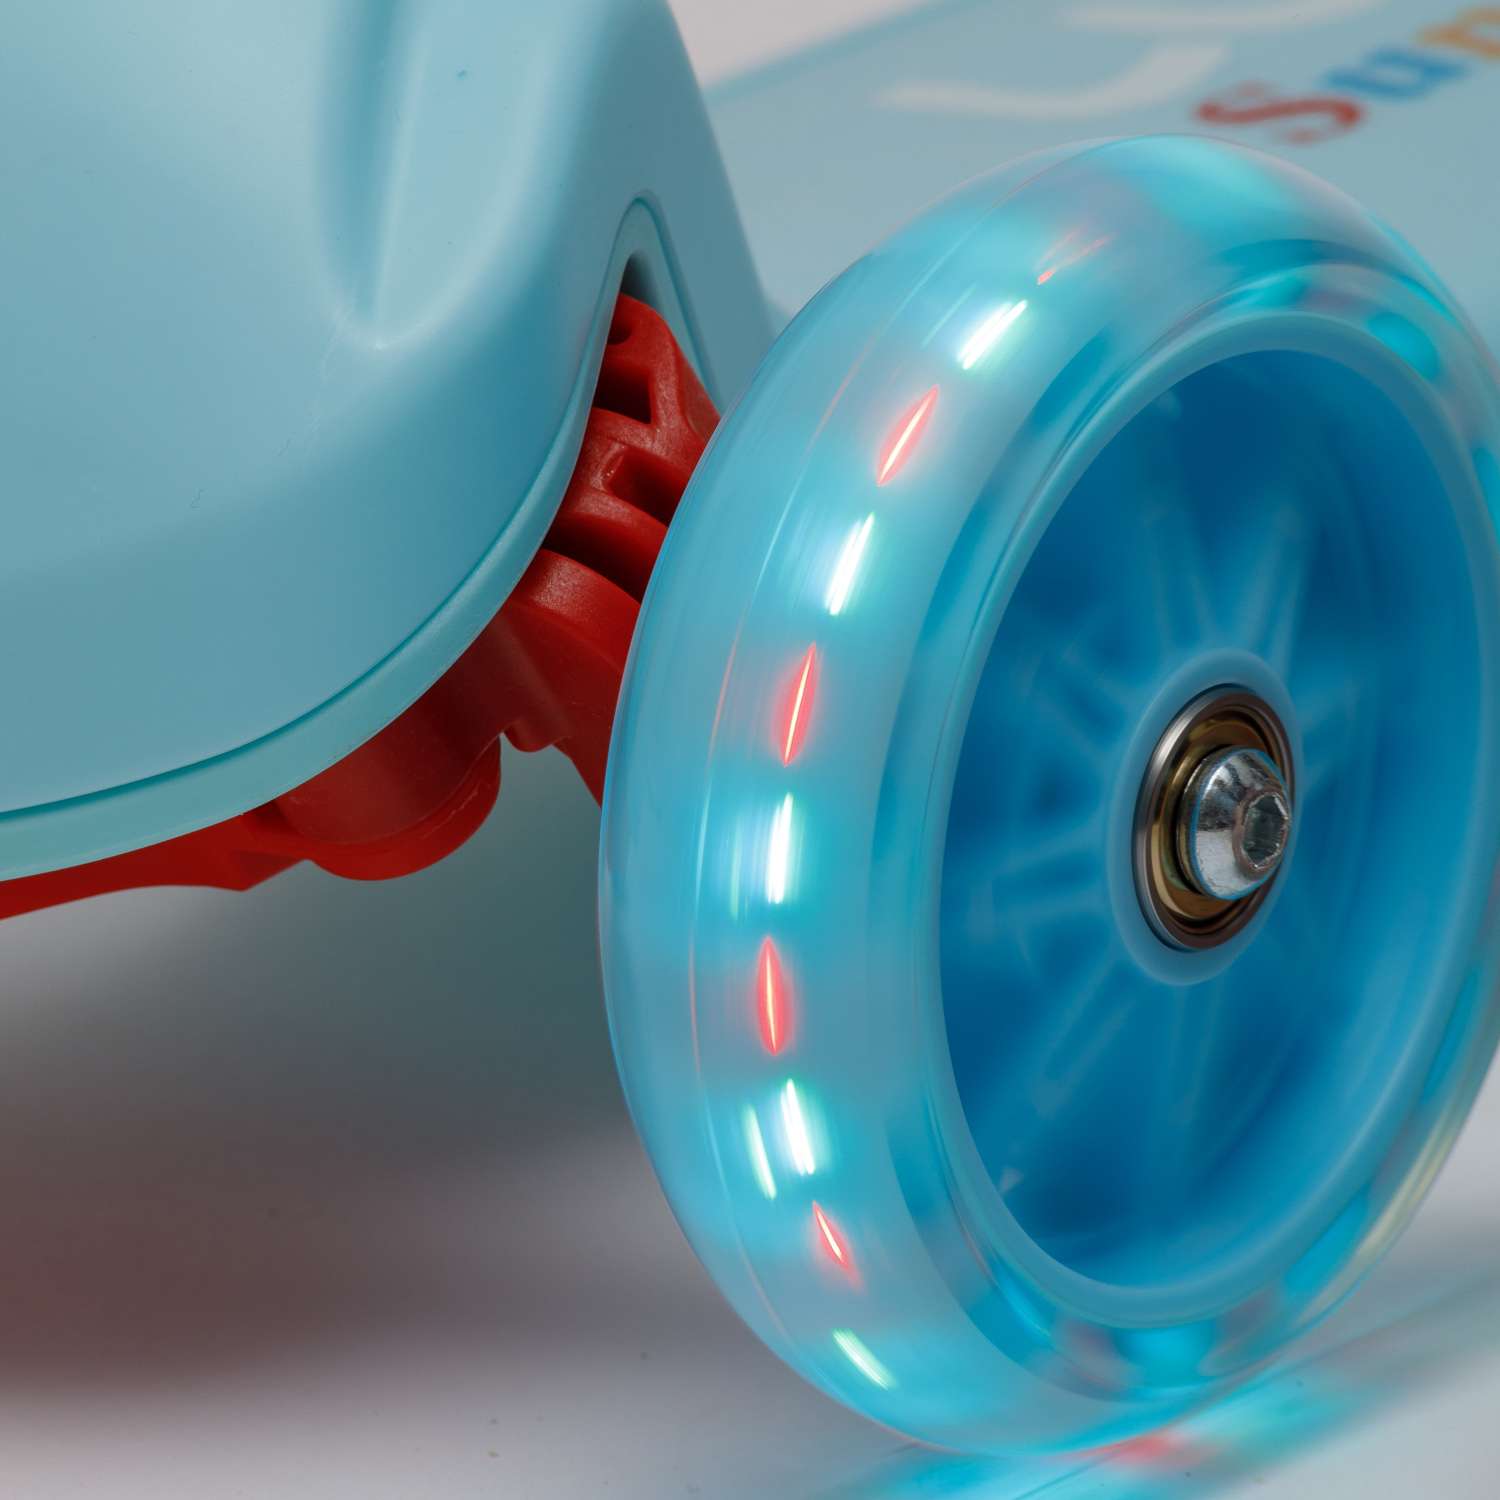 Самокат BABY STYLE детский светящиеся колеса с тормозом до 25 кг голубой - фото 6